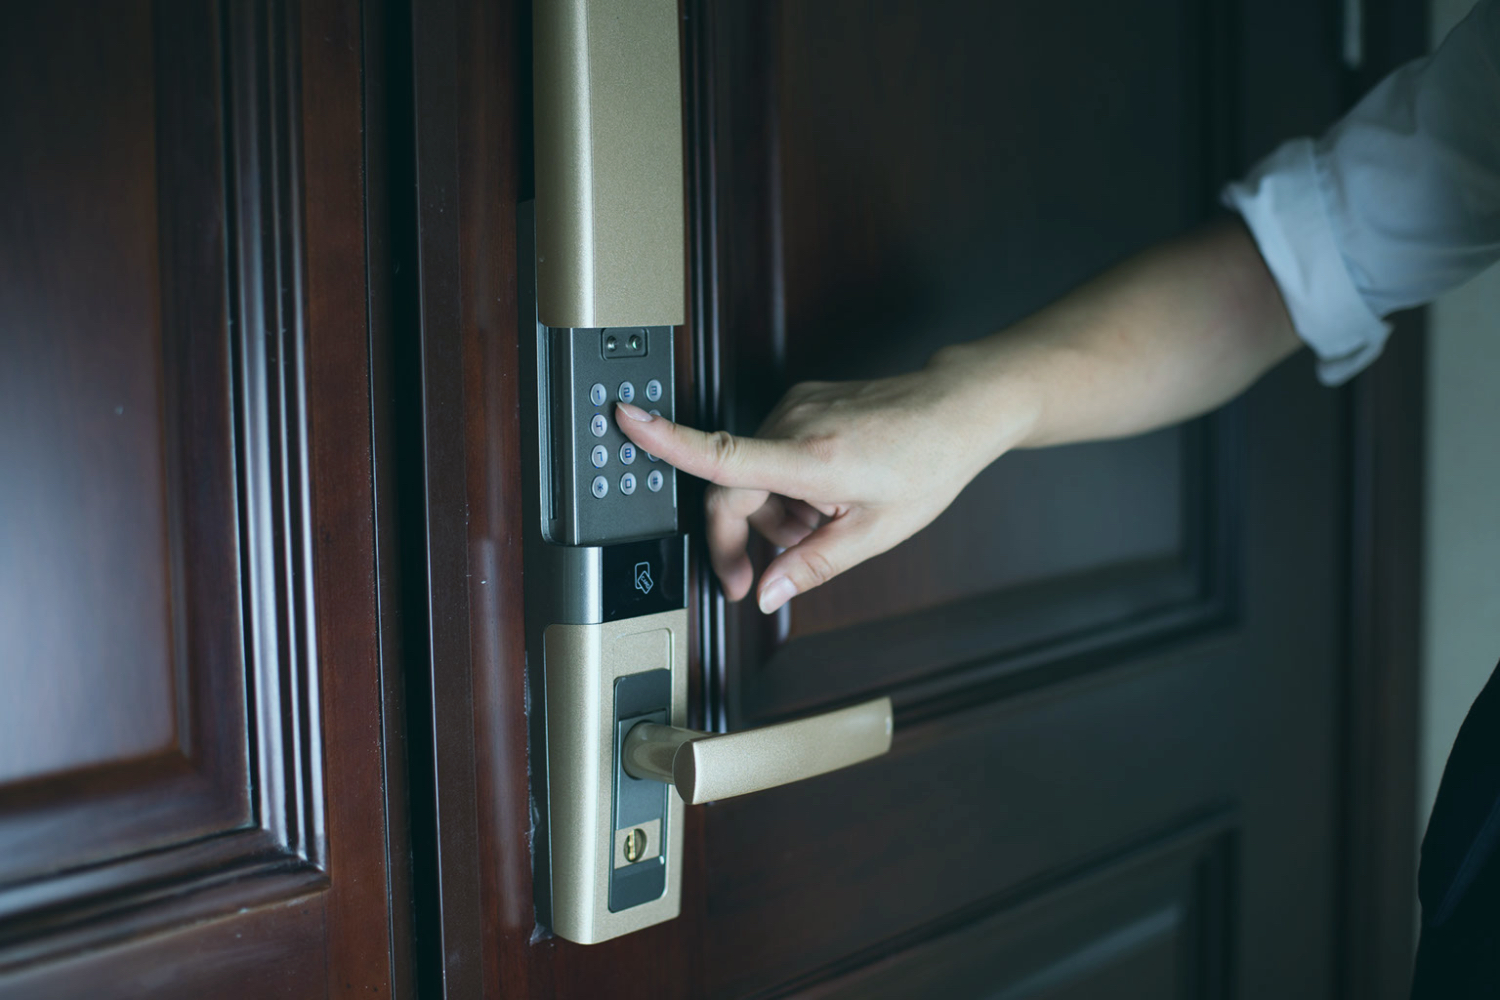 Installer une serrure connectée pour sécuriser votre logement